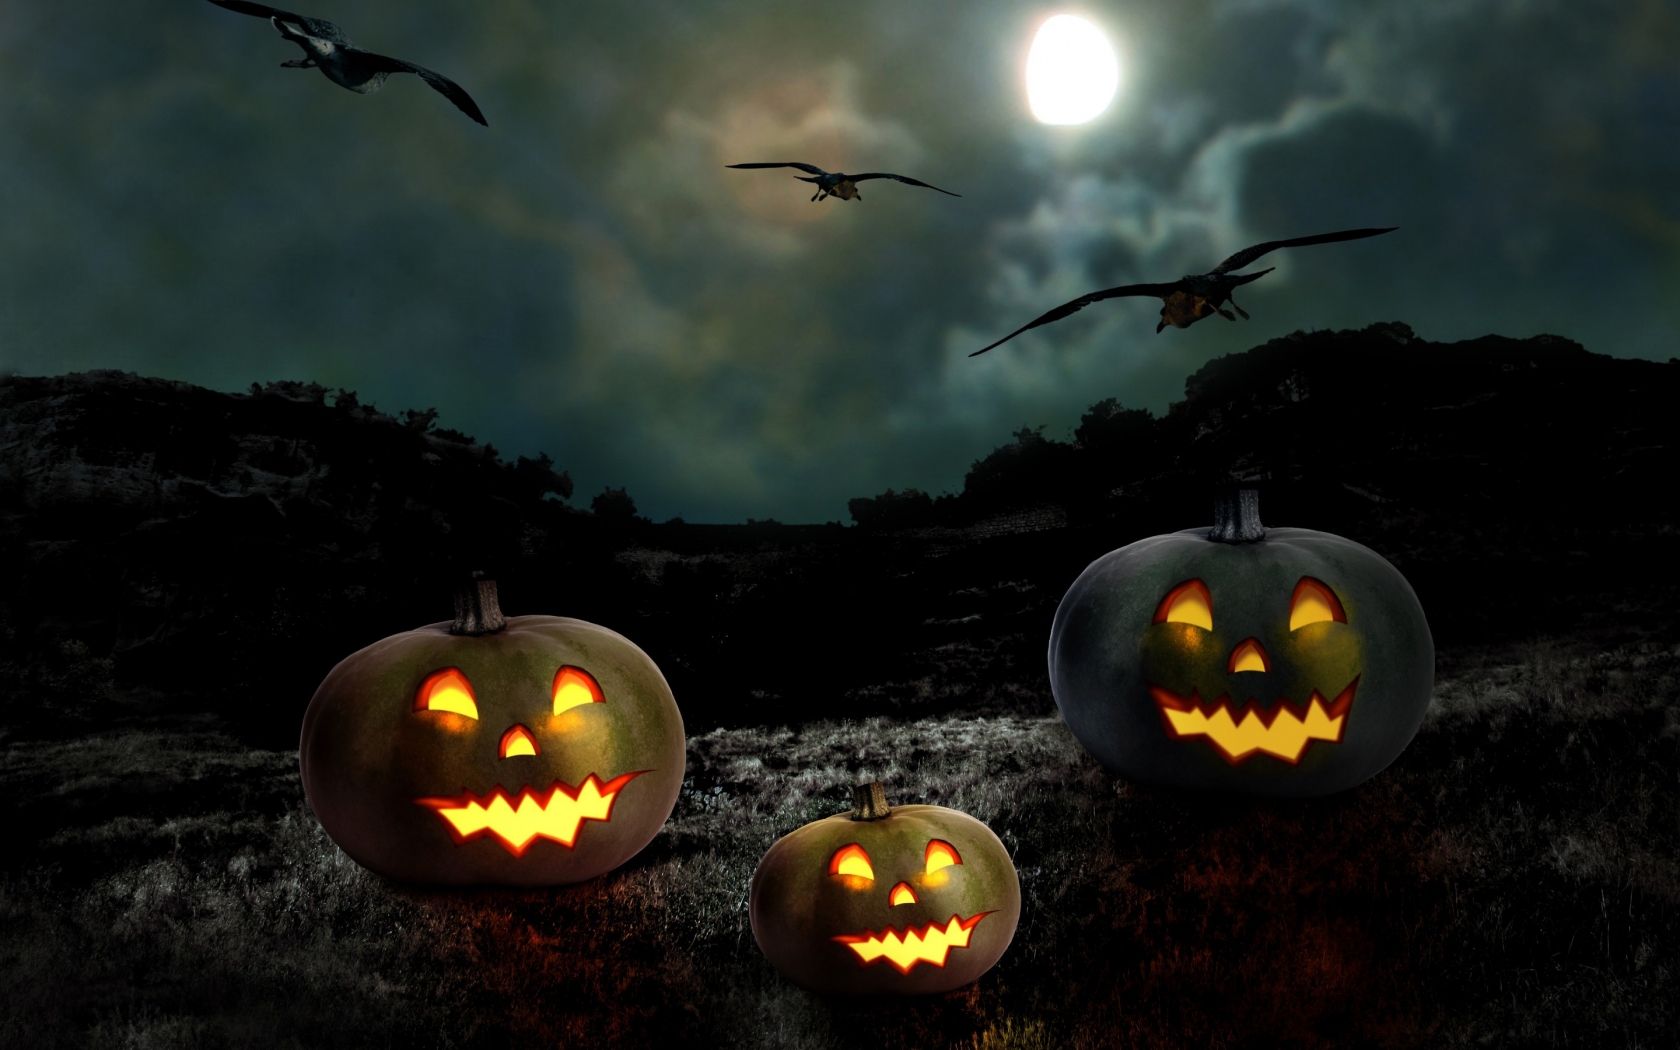 Halloween Pumpkin Smile for 1680 x 1050 widescreen resolution